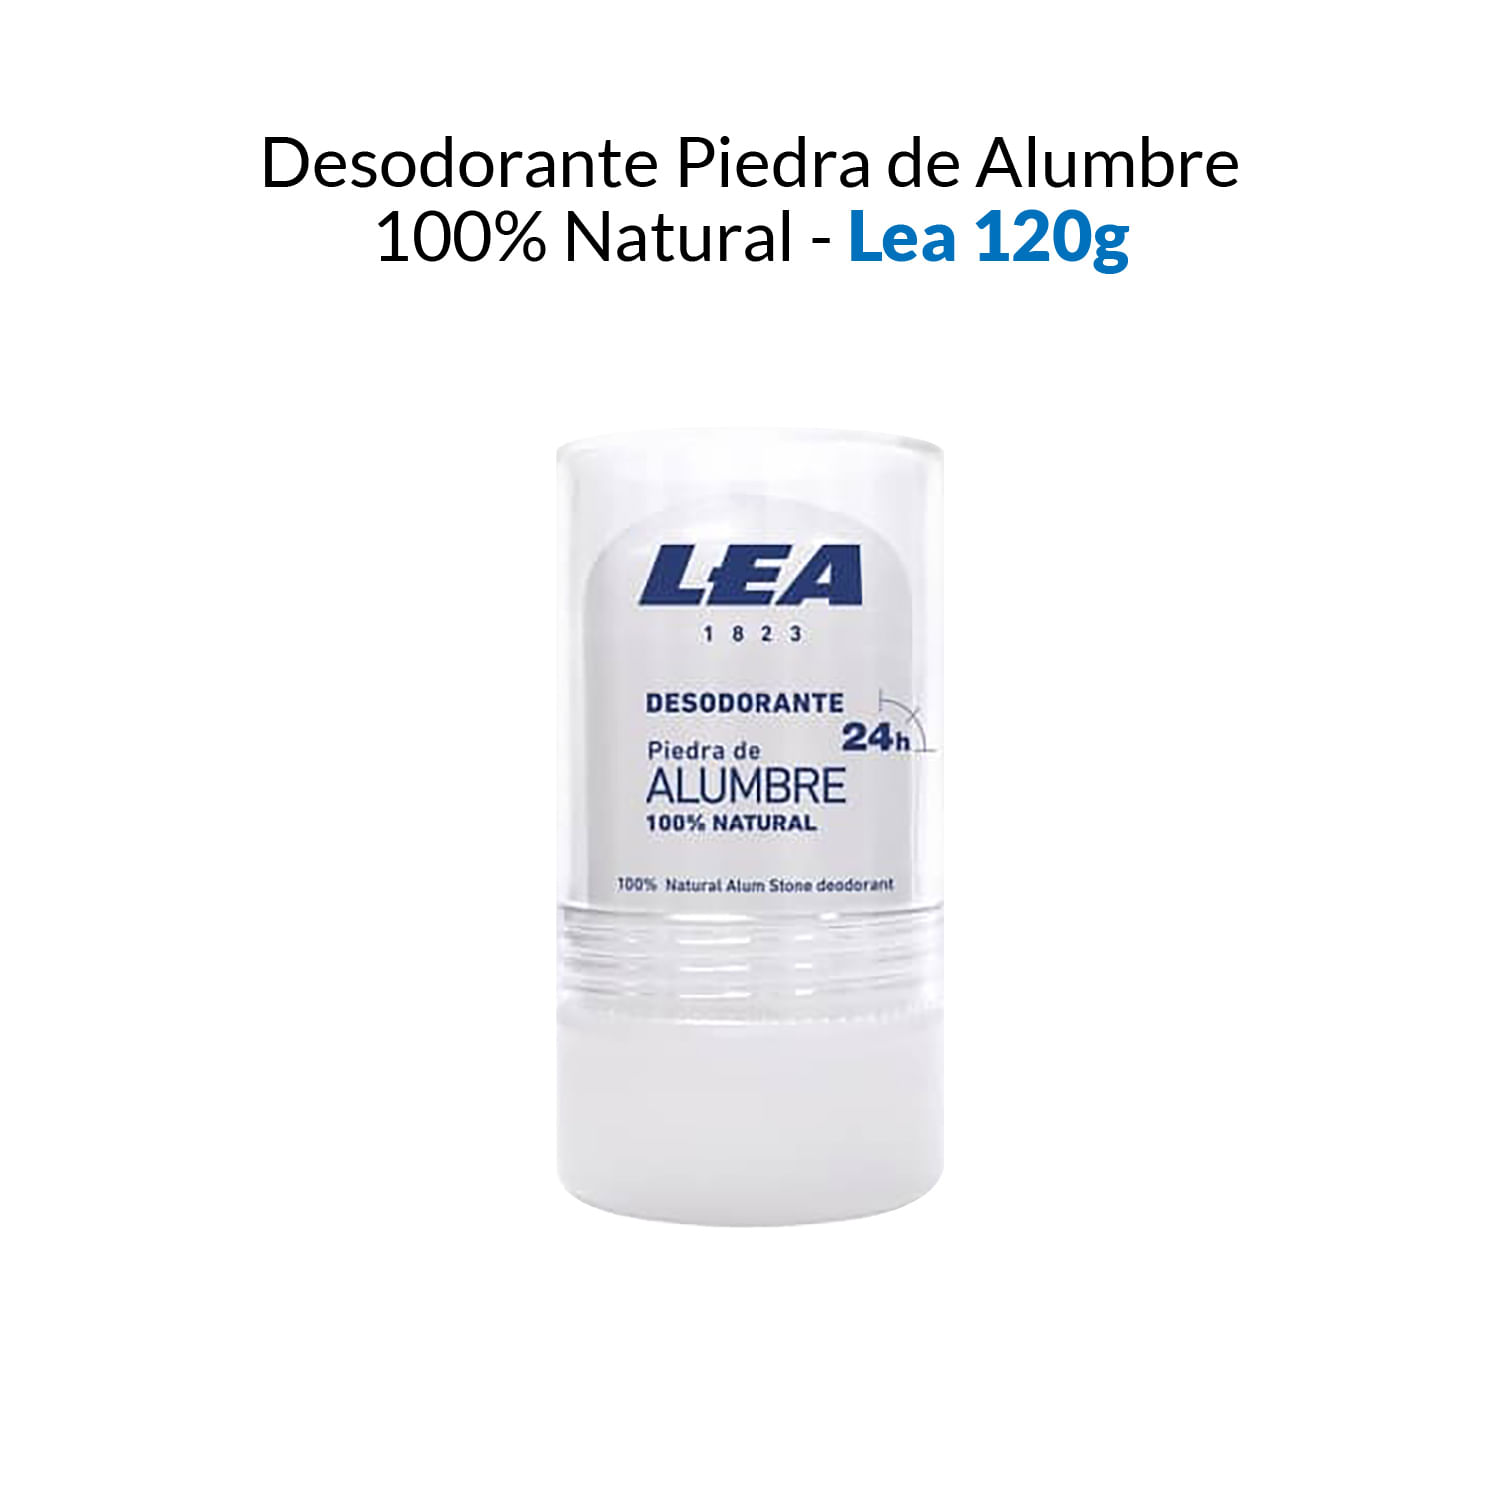 Desodorante Piedra De Alumbre 100 Natural Lea 120g 7213